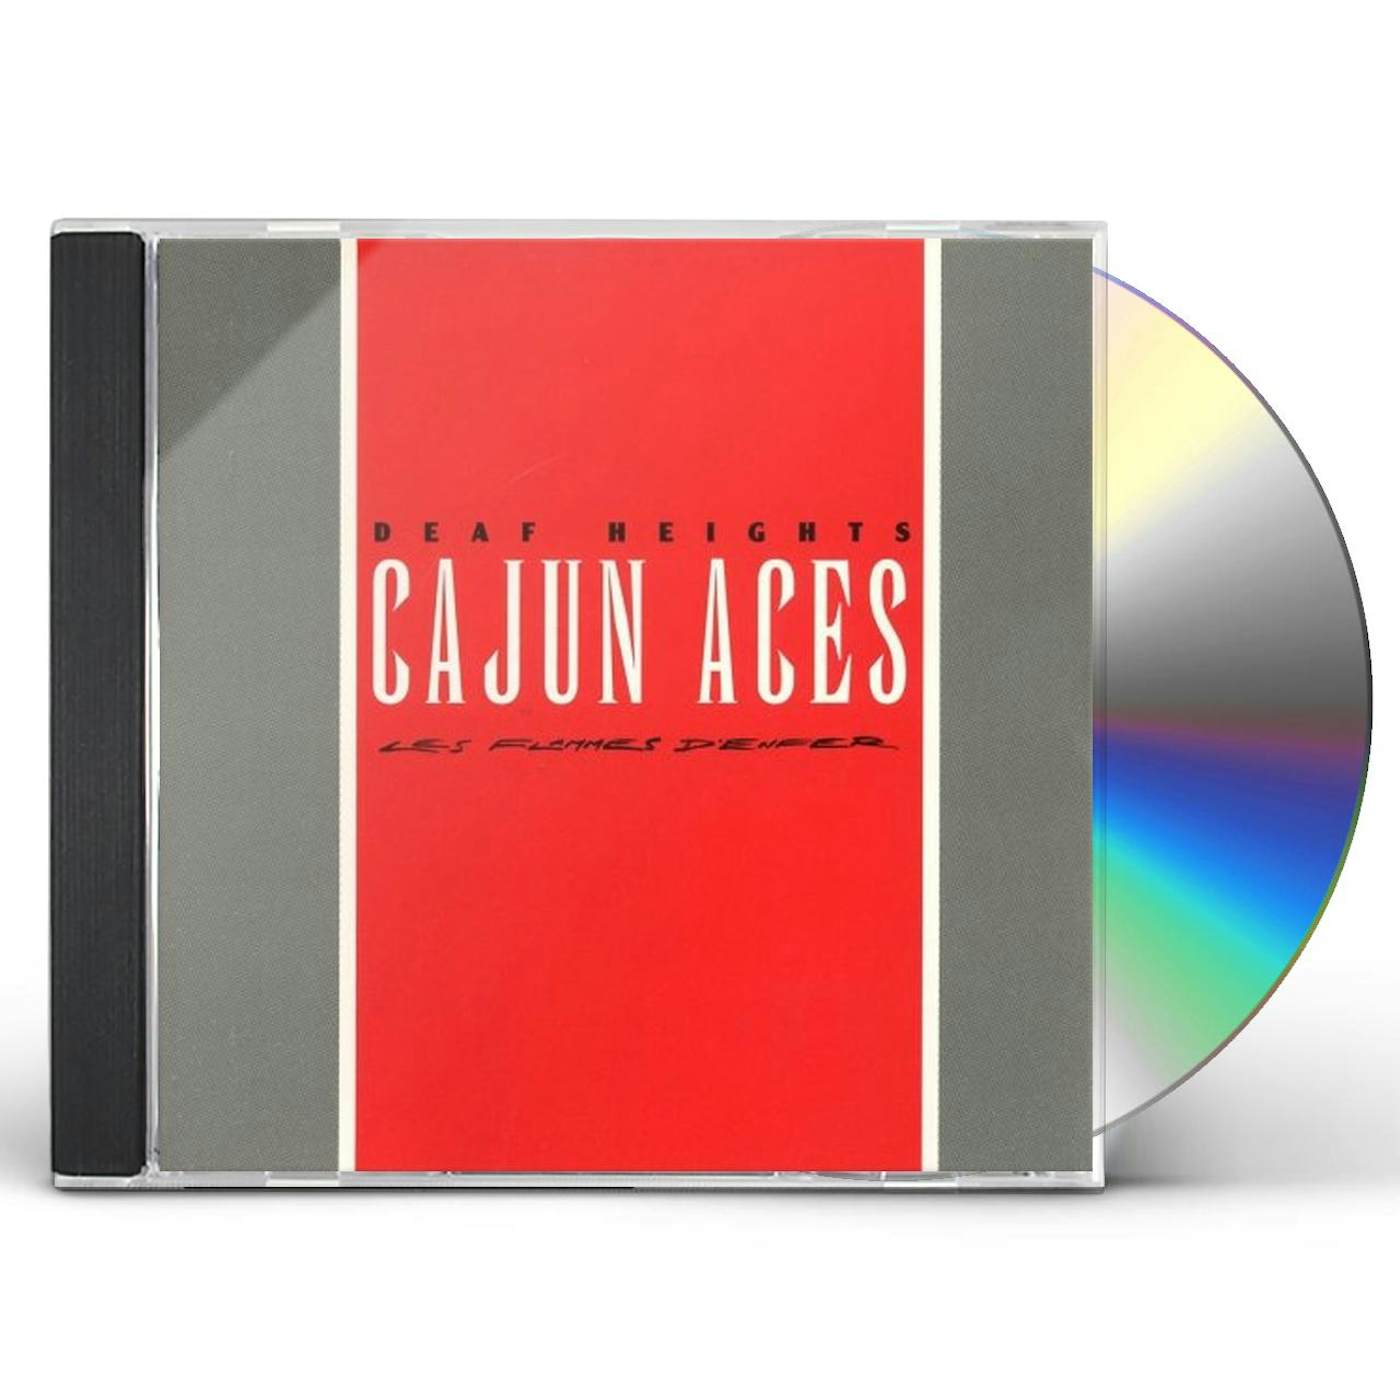 The Cajun Aces LES FLAMMES D'ENFER CD